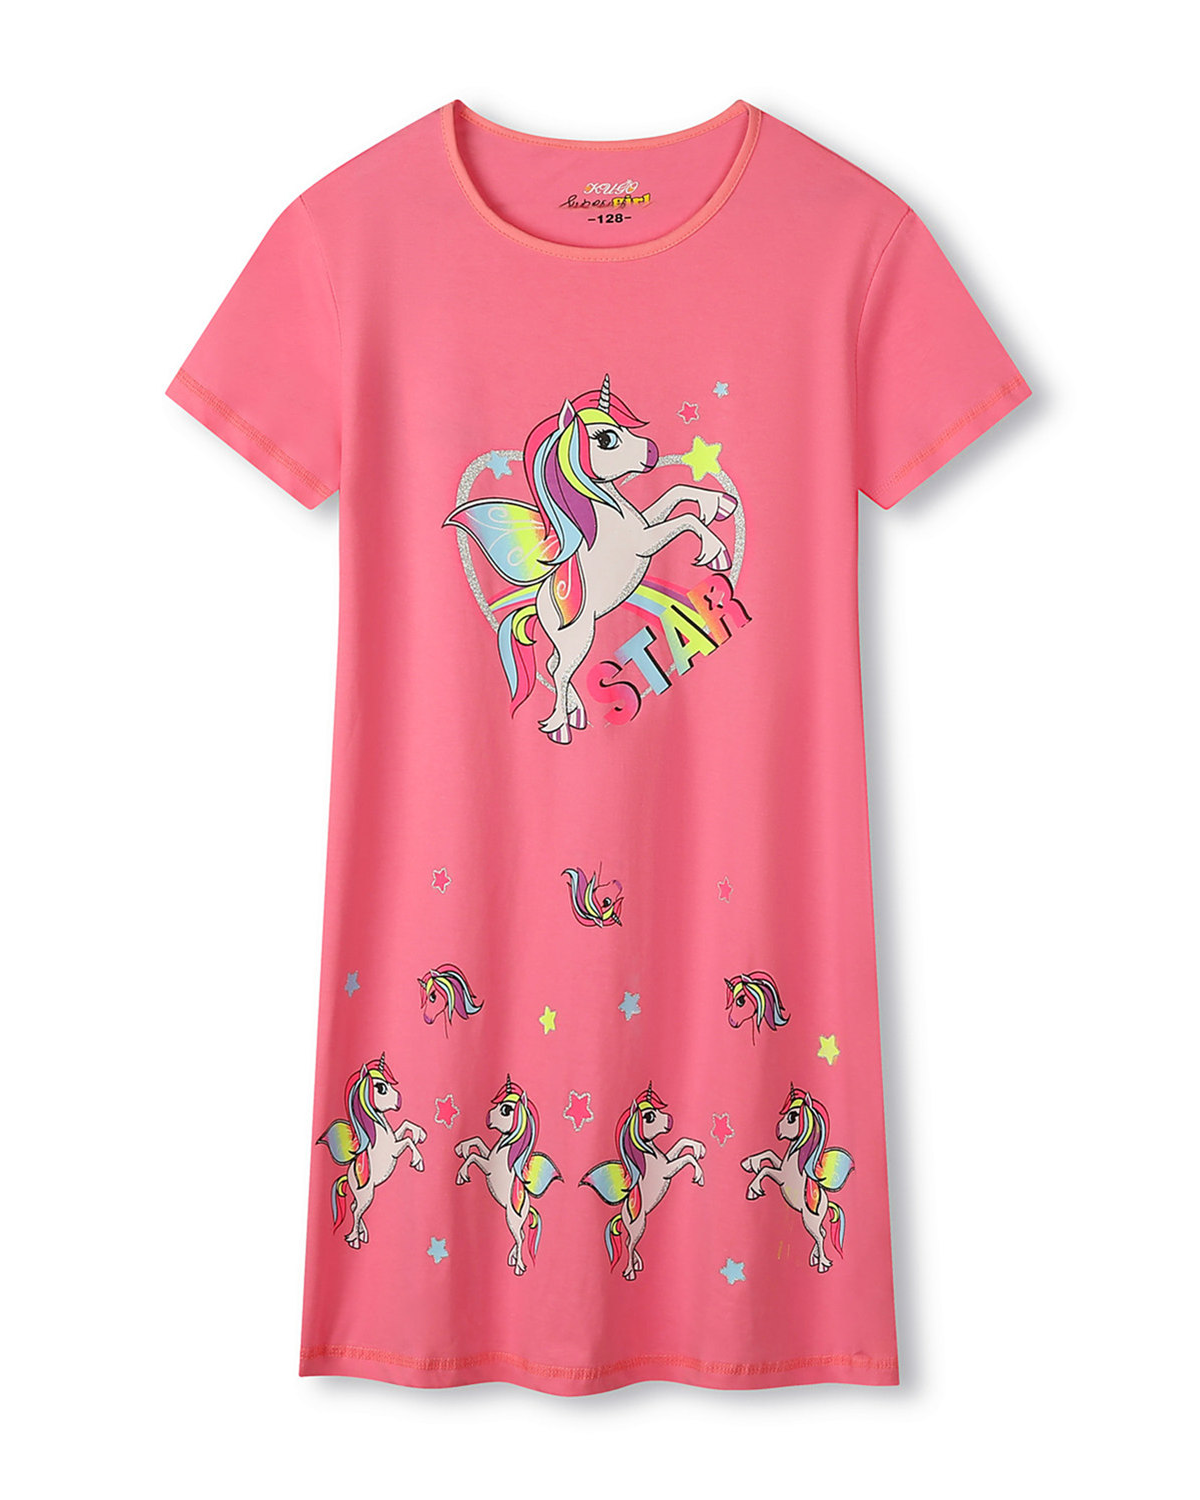 Dívčí noční košile - KUGO MN1766, tmavší růžová Barva: Růžová tmavší, Velikost: 122